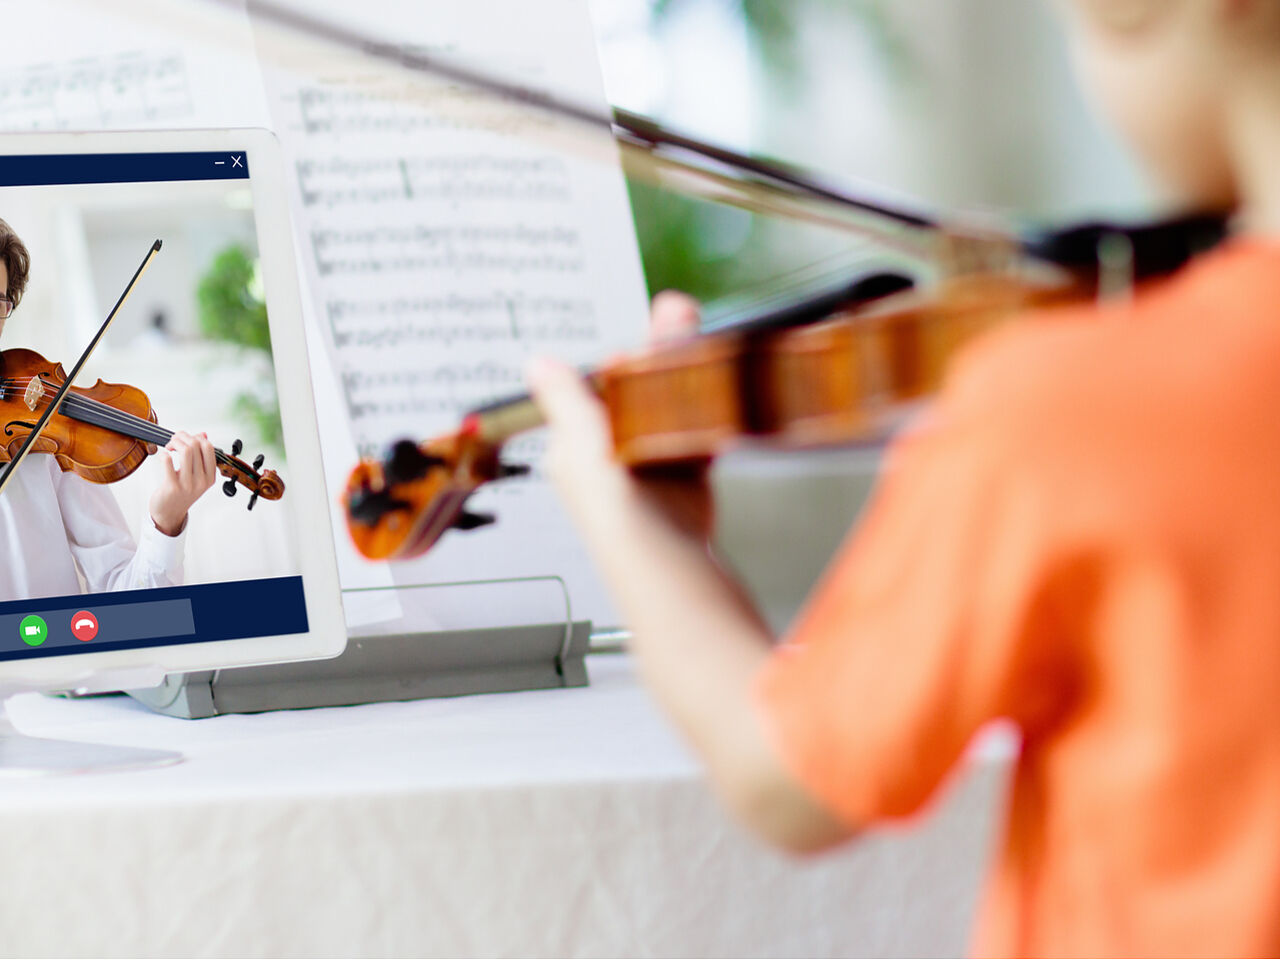 子どもが自宅でオンラインでヴァイオリンの指導を受けている画像